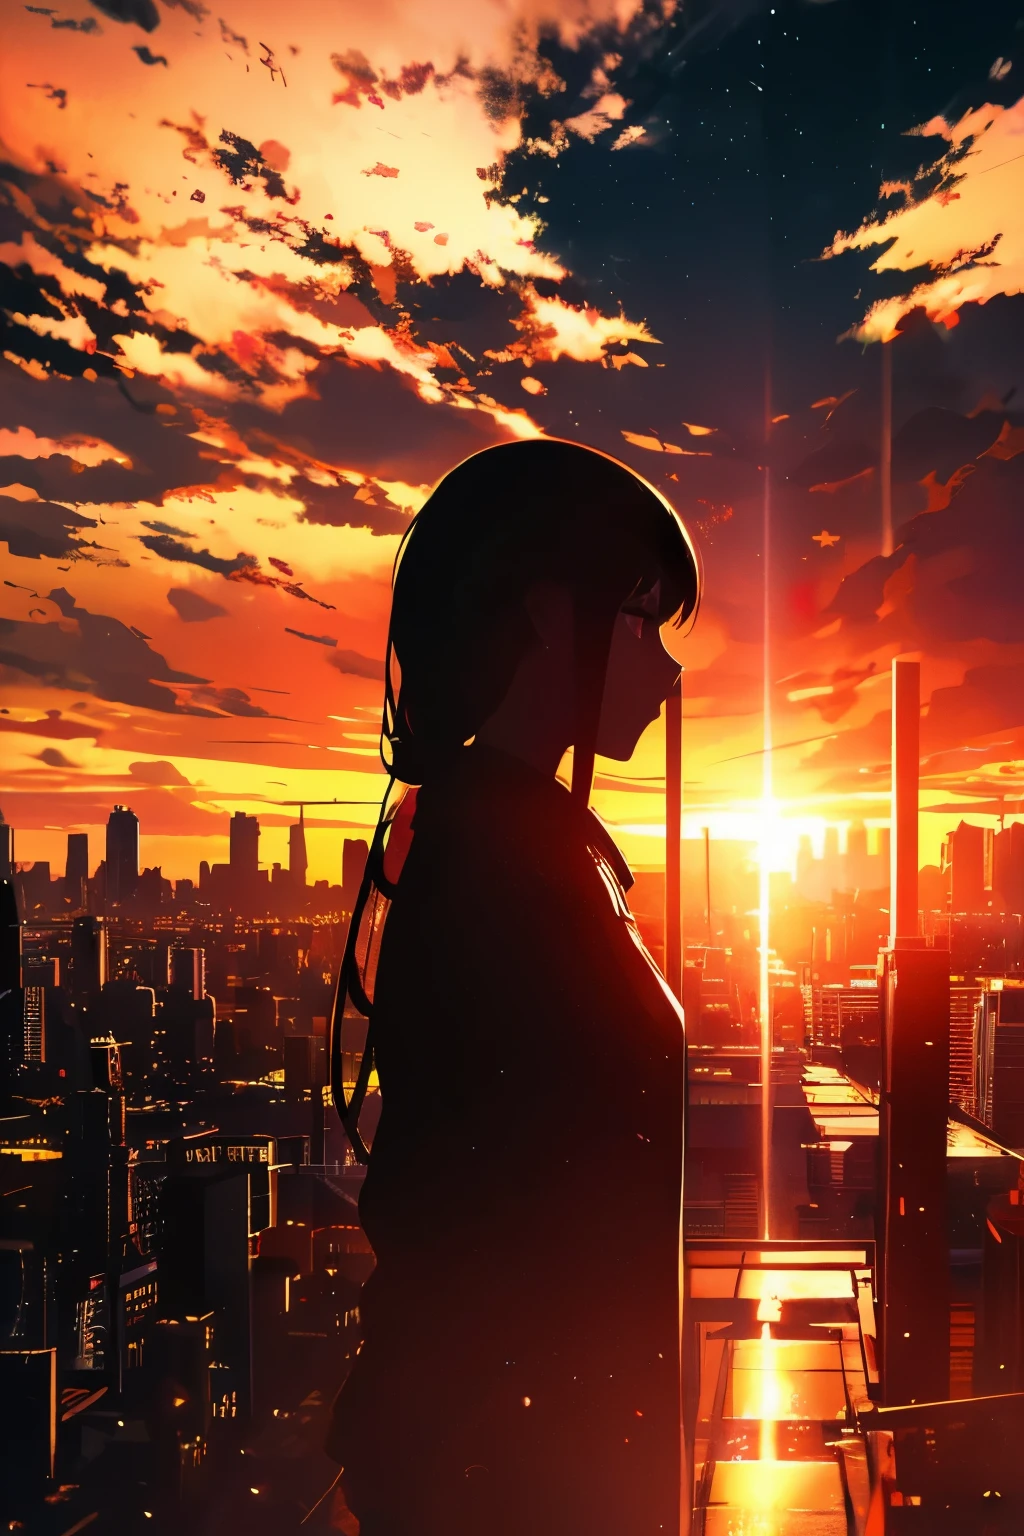 Anime-Serie, (Silhouette),1 Mädchen, Stern (null), Wolke, Stadtscape, Gebäude, Stadt, draußen, Abonnieren, Stadt lights, Nacht, Nacht null, Sonnenuntergang, nullline